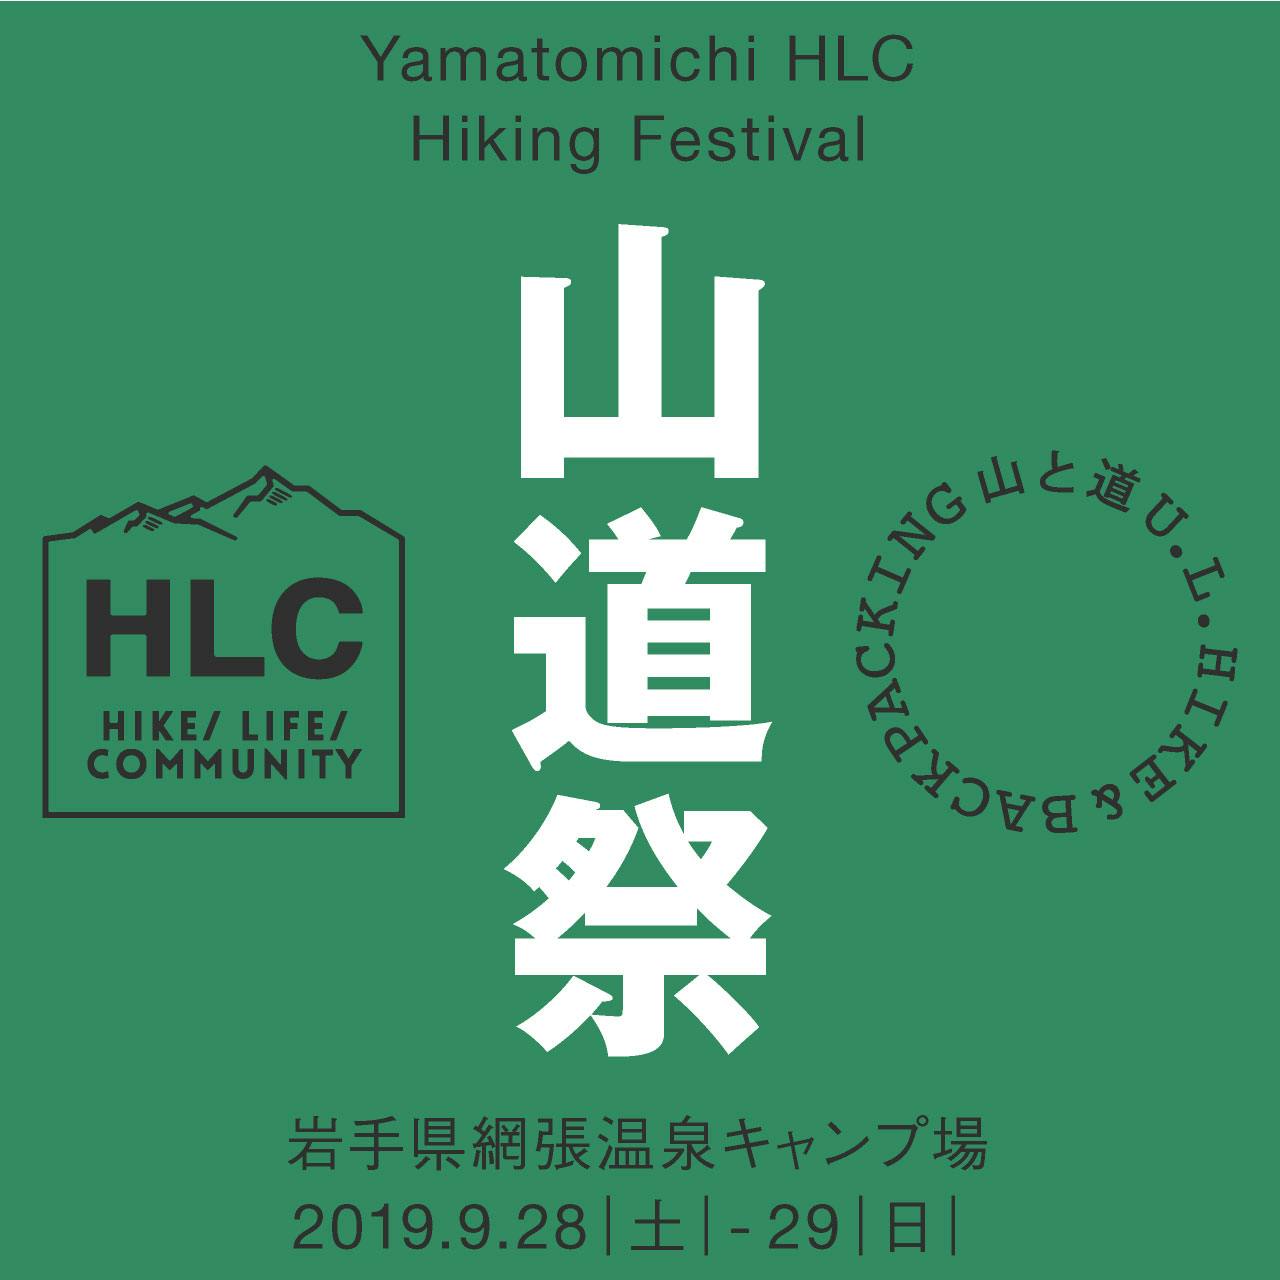 山道祭 Yamatomichi HLC Hiking Festival 開催のお知らせ